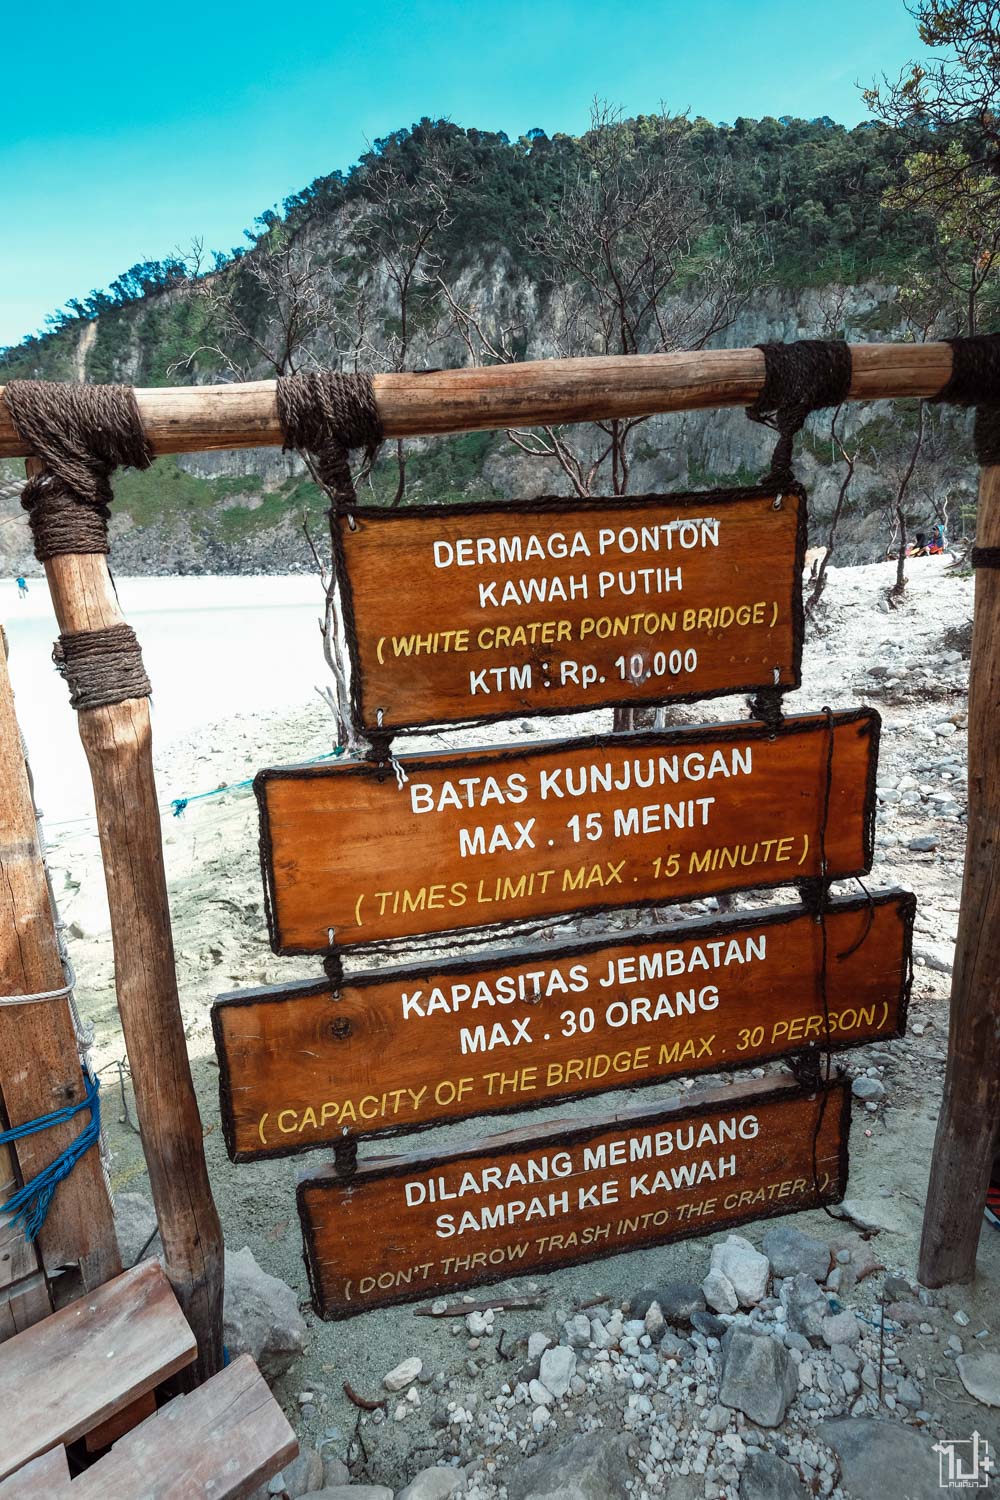 Indonesia, Review Indonesia, Review Bandung, Bandung, Kawah Putih, Kawah putih White Crater, White Crater, wonderful indonesia, go indonesia, Air Asia Travels, ไปอินโดนีเซียเซี๊ยะจีจี, อินโดโอ้ยดี, ไปจาการ์ตาไปกับแอร์เอเชีย, บันดุง, อินโดนีเซีย, ที่เที่ยวอินโดนีเซีย, รีวิวอินโดนีเซีย, ทะเลสาบปล่องภูเขาไฟ